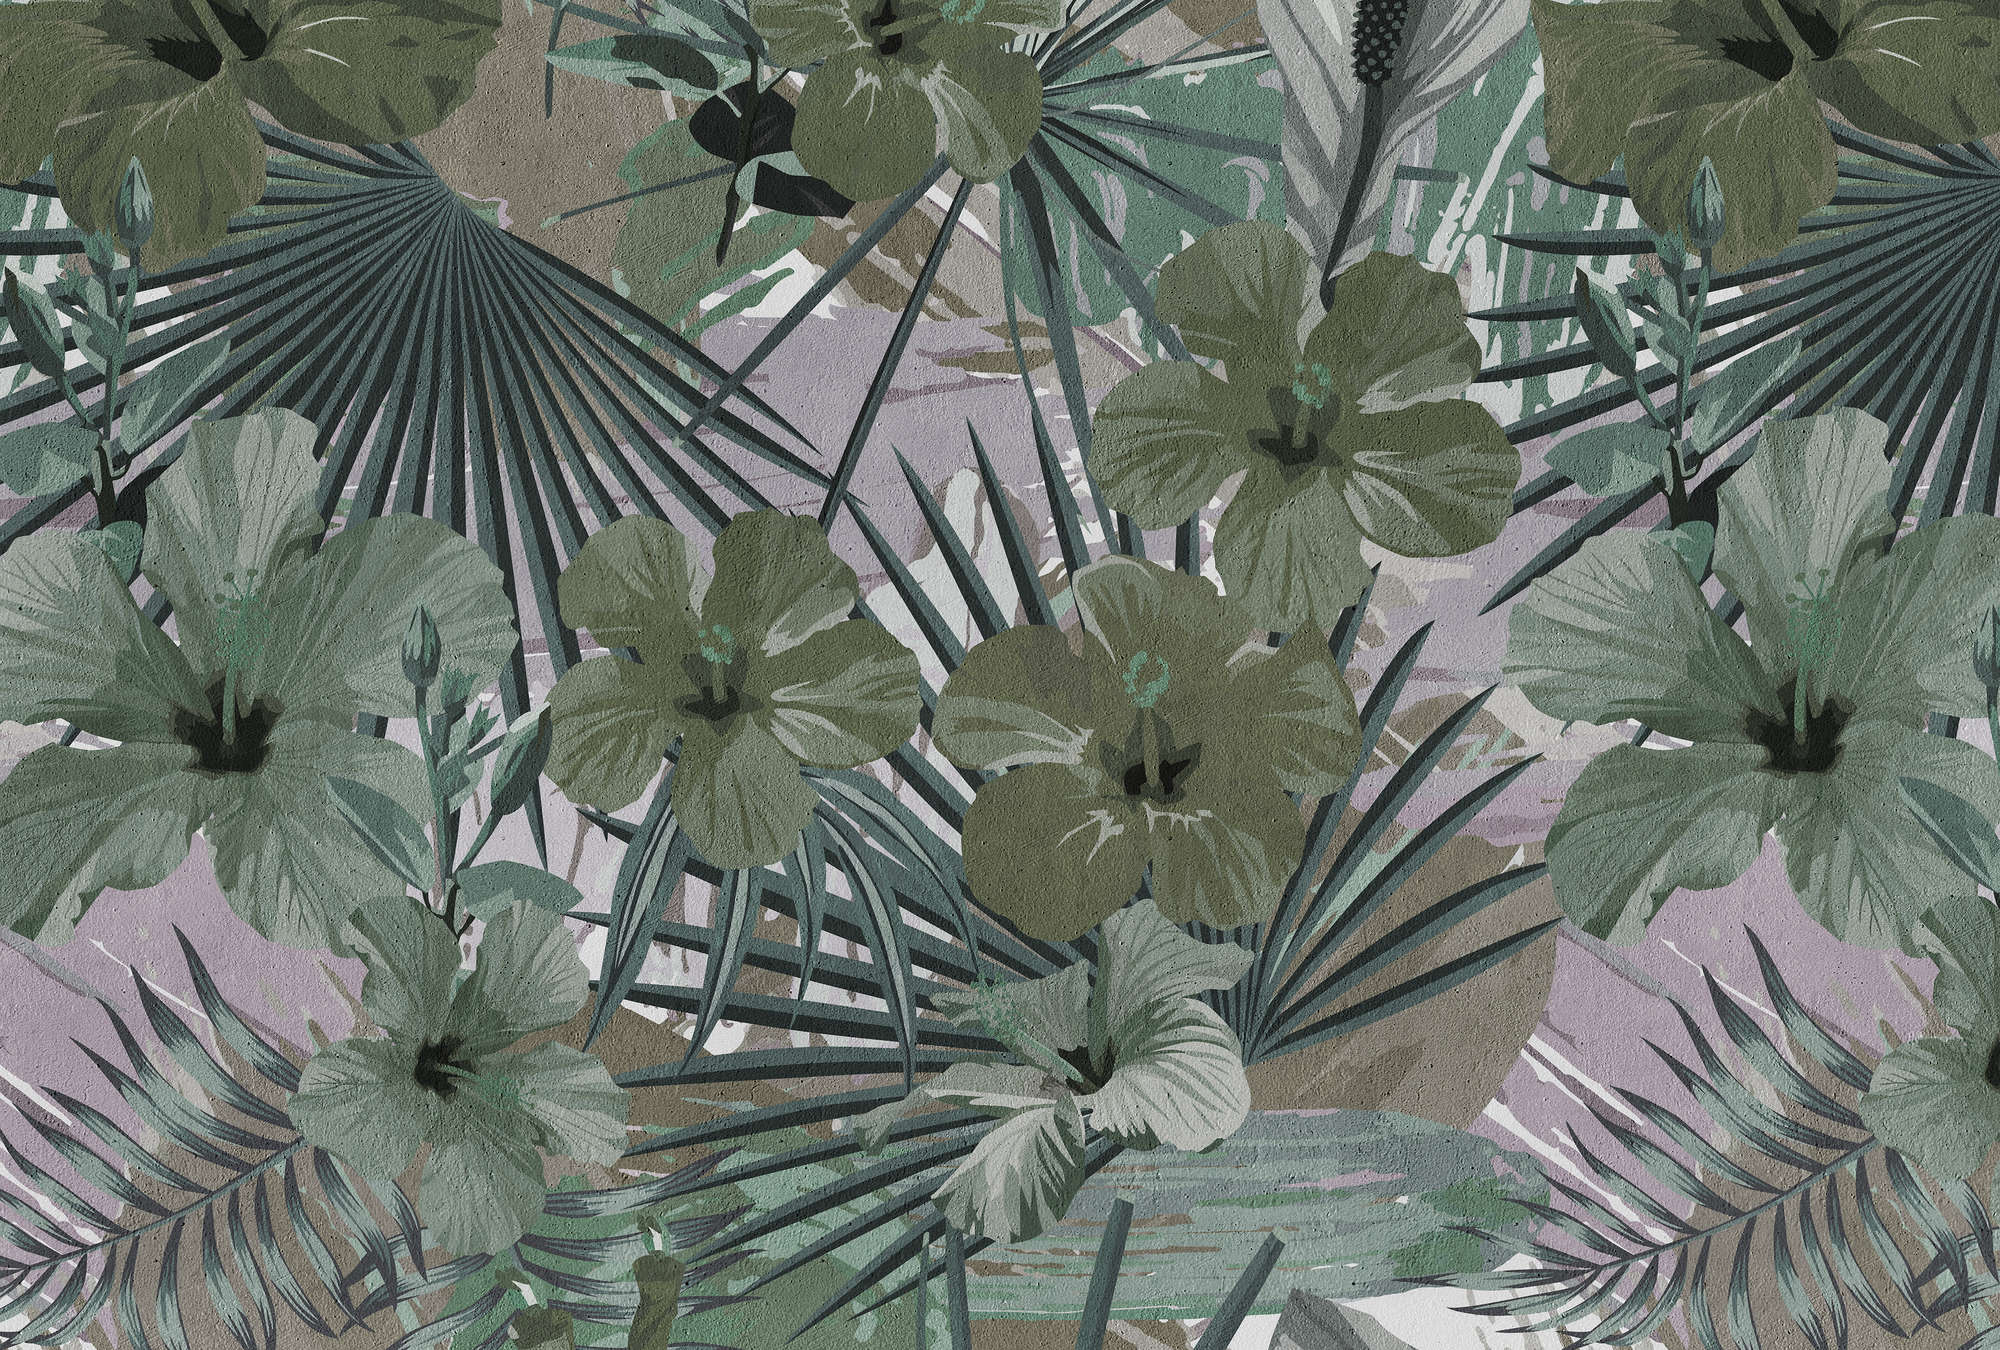             Jungle Palm en Bloemen Behang - Groen, Grijs
        